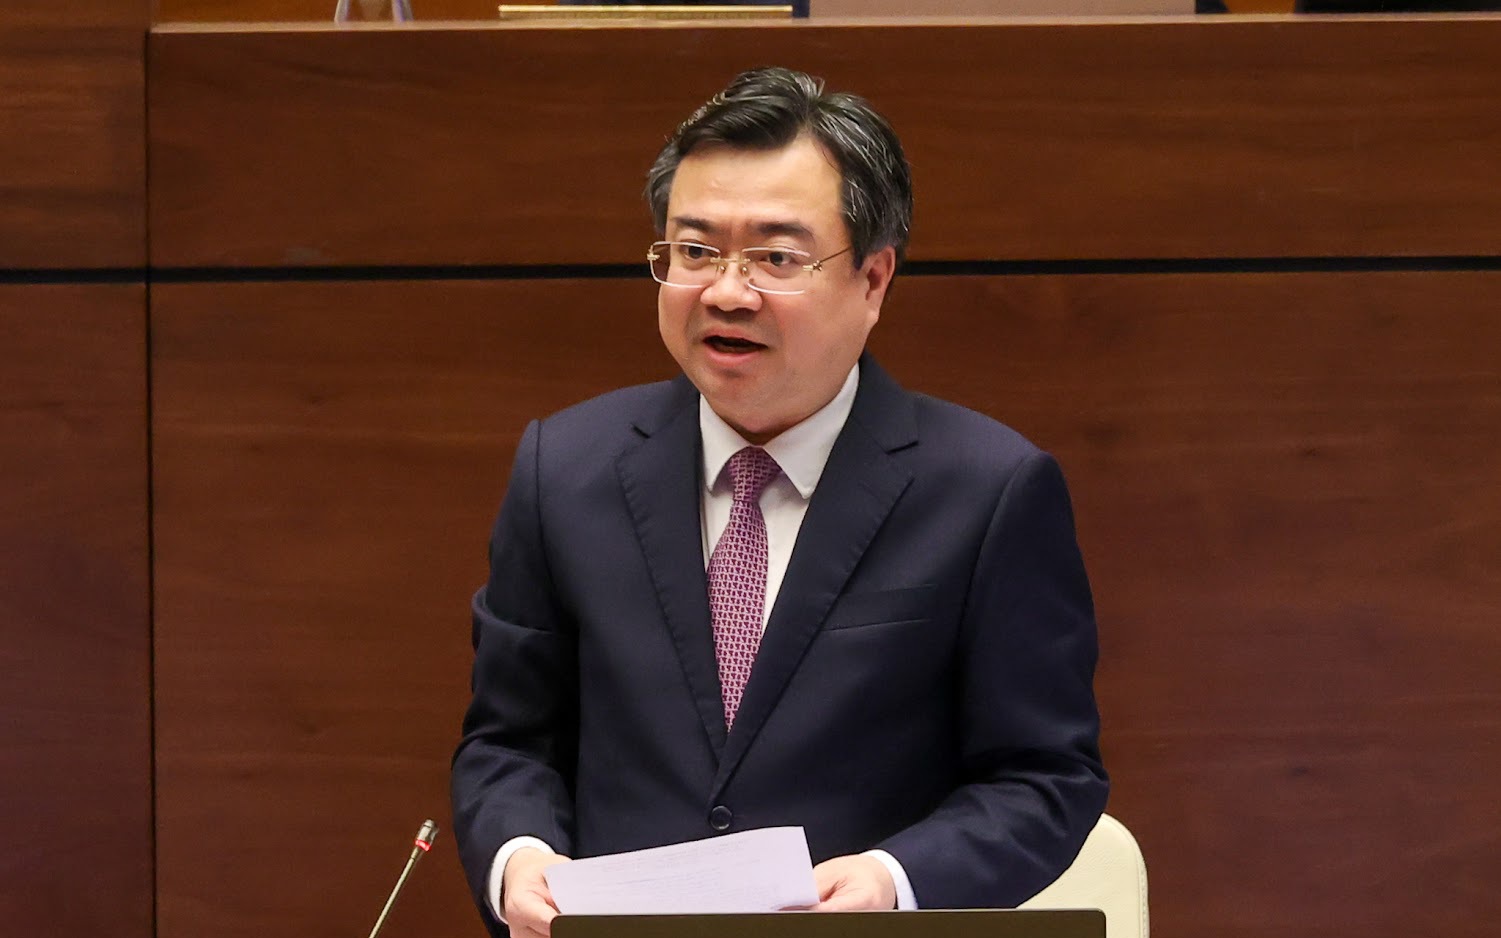 TỔNG THUẬT: Bộ trưởng Bộ Xây dựng Nguyễn Thanh Nghị trả lời chất vấn